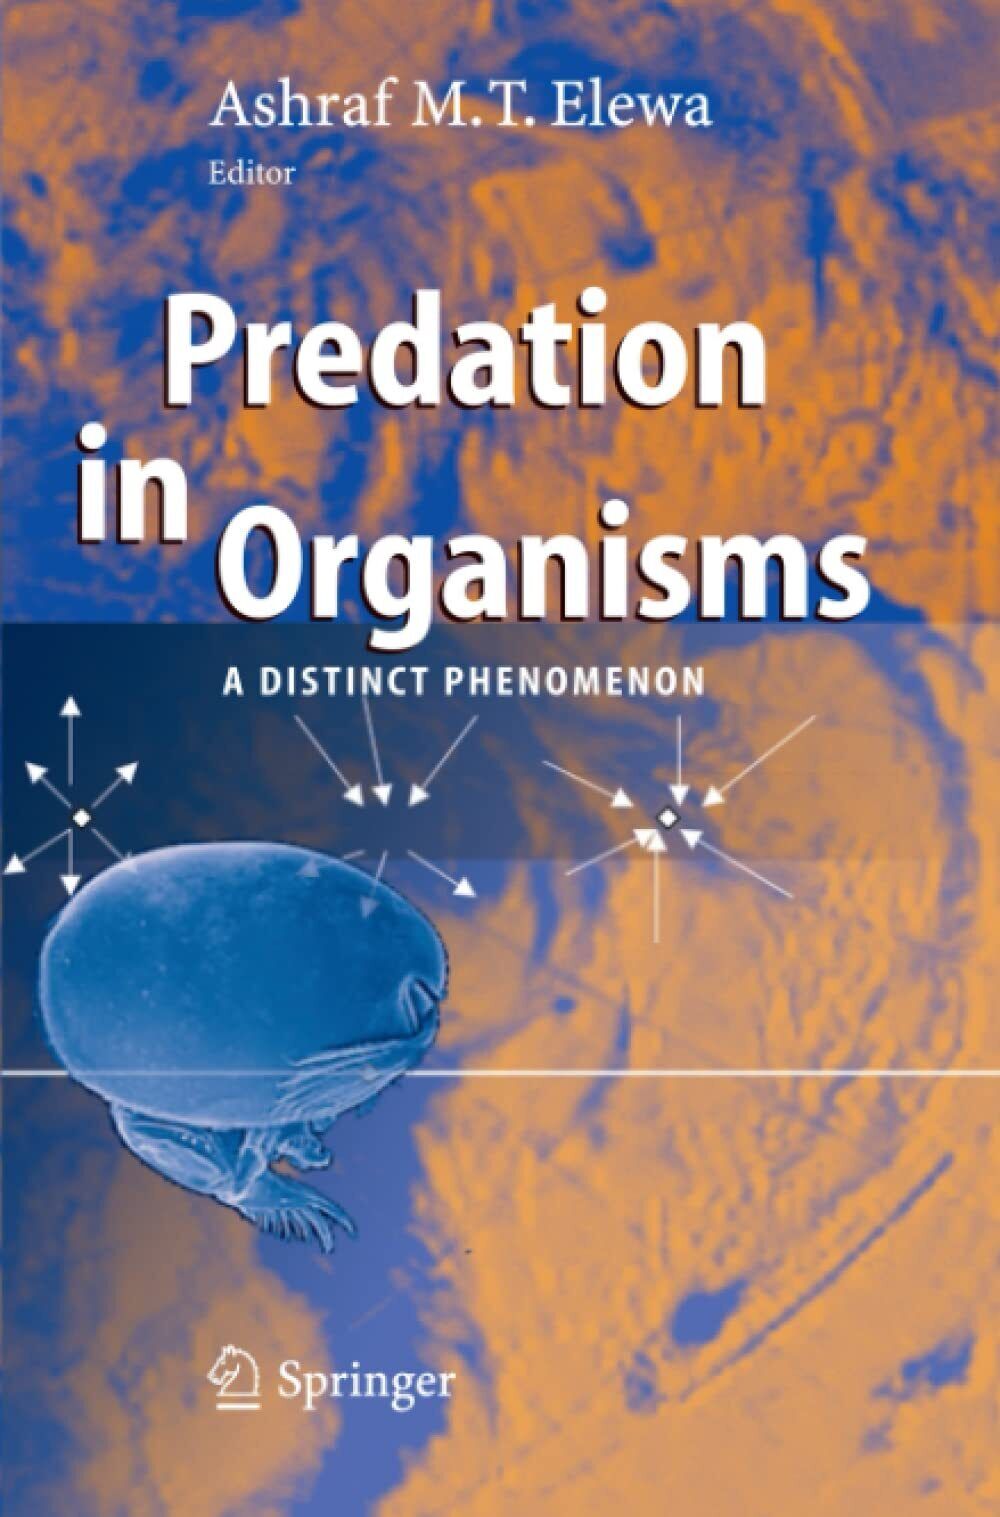 Predation in Organisms - Ashraf M.T. Elewa - Springer, 2010